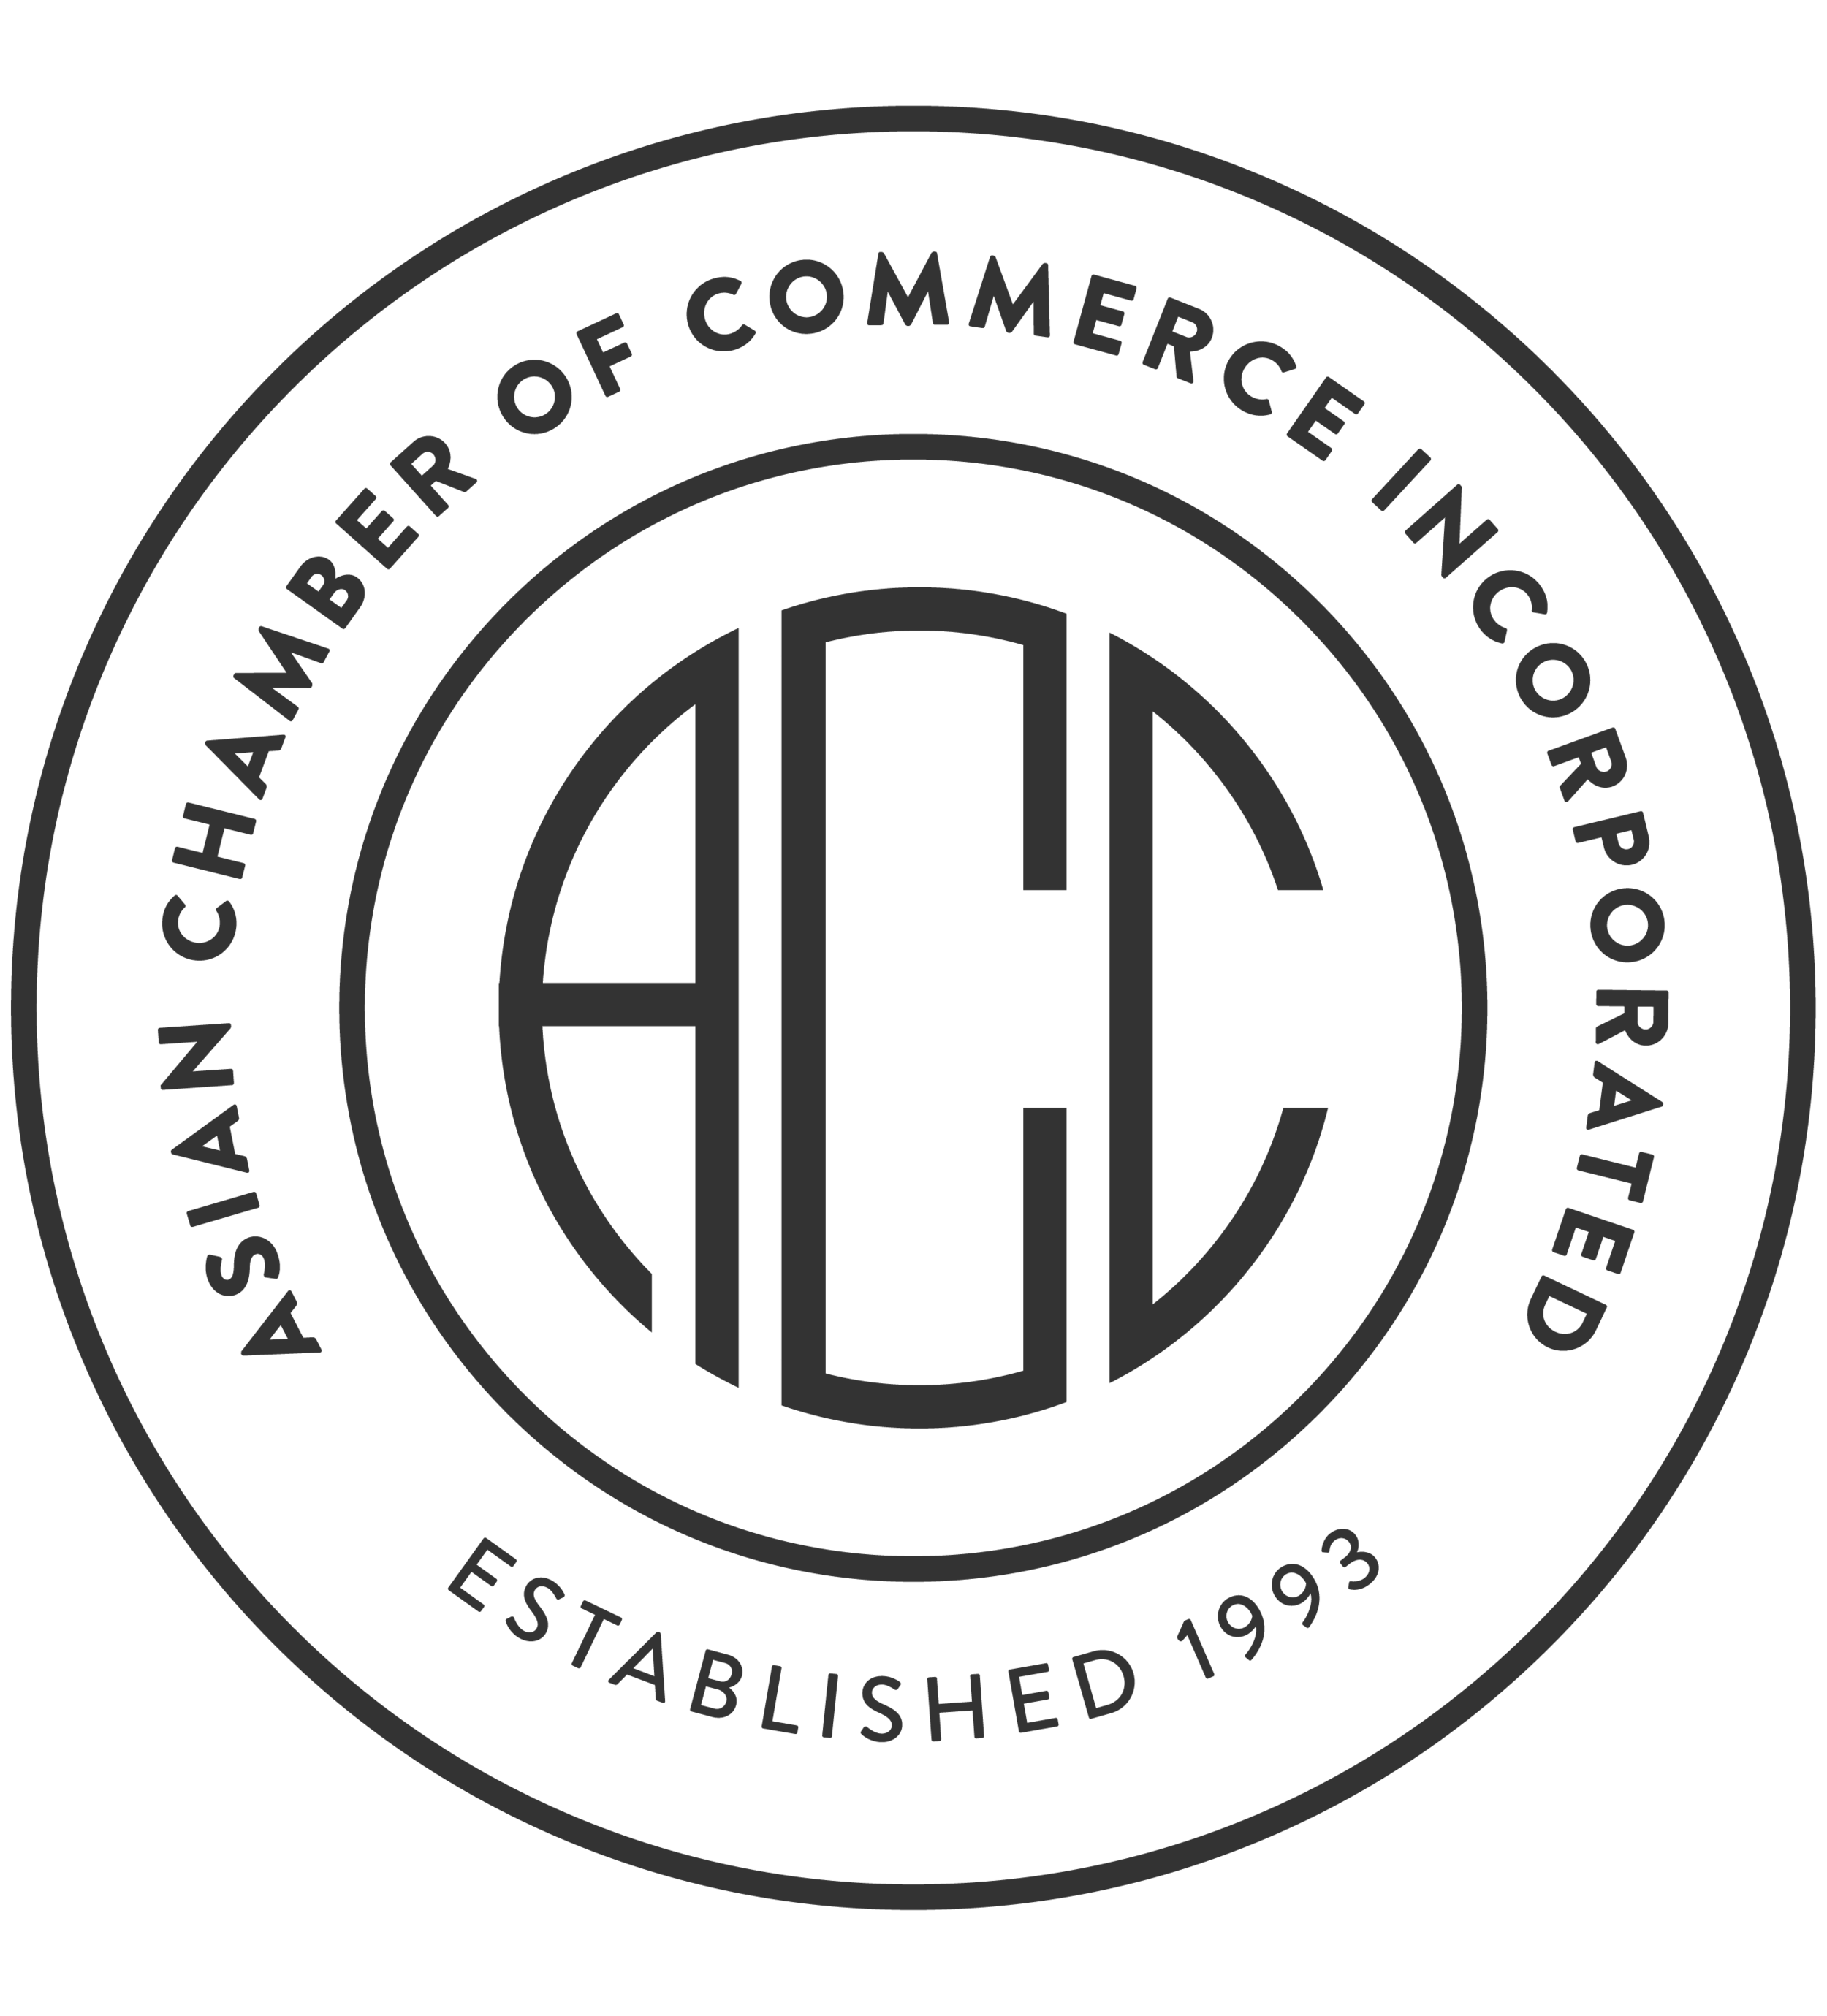 Arizona Asian Chamber of Commerce